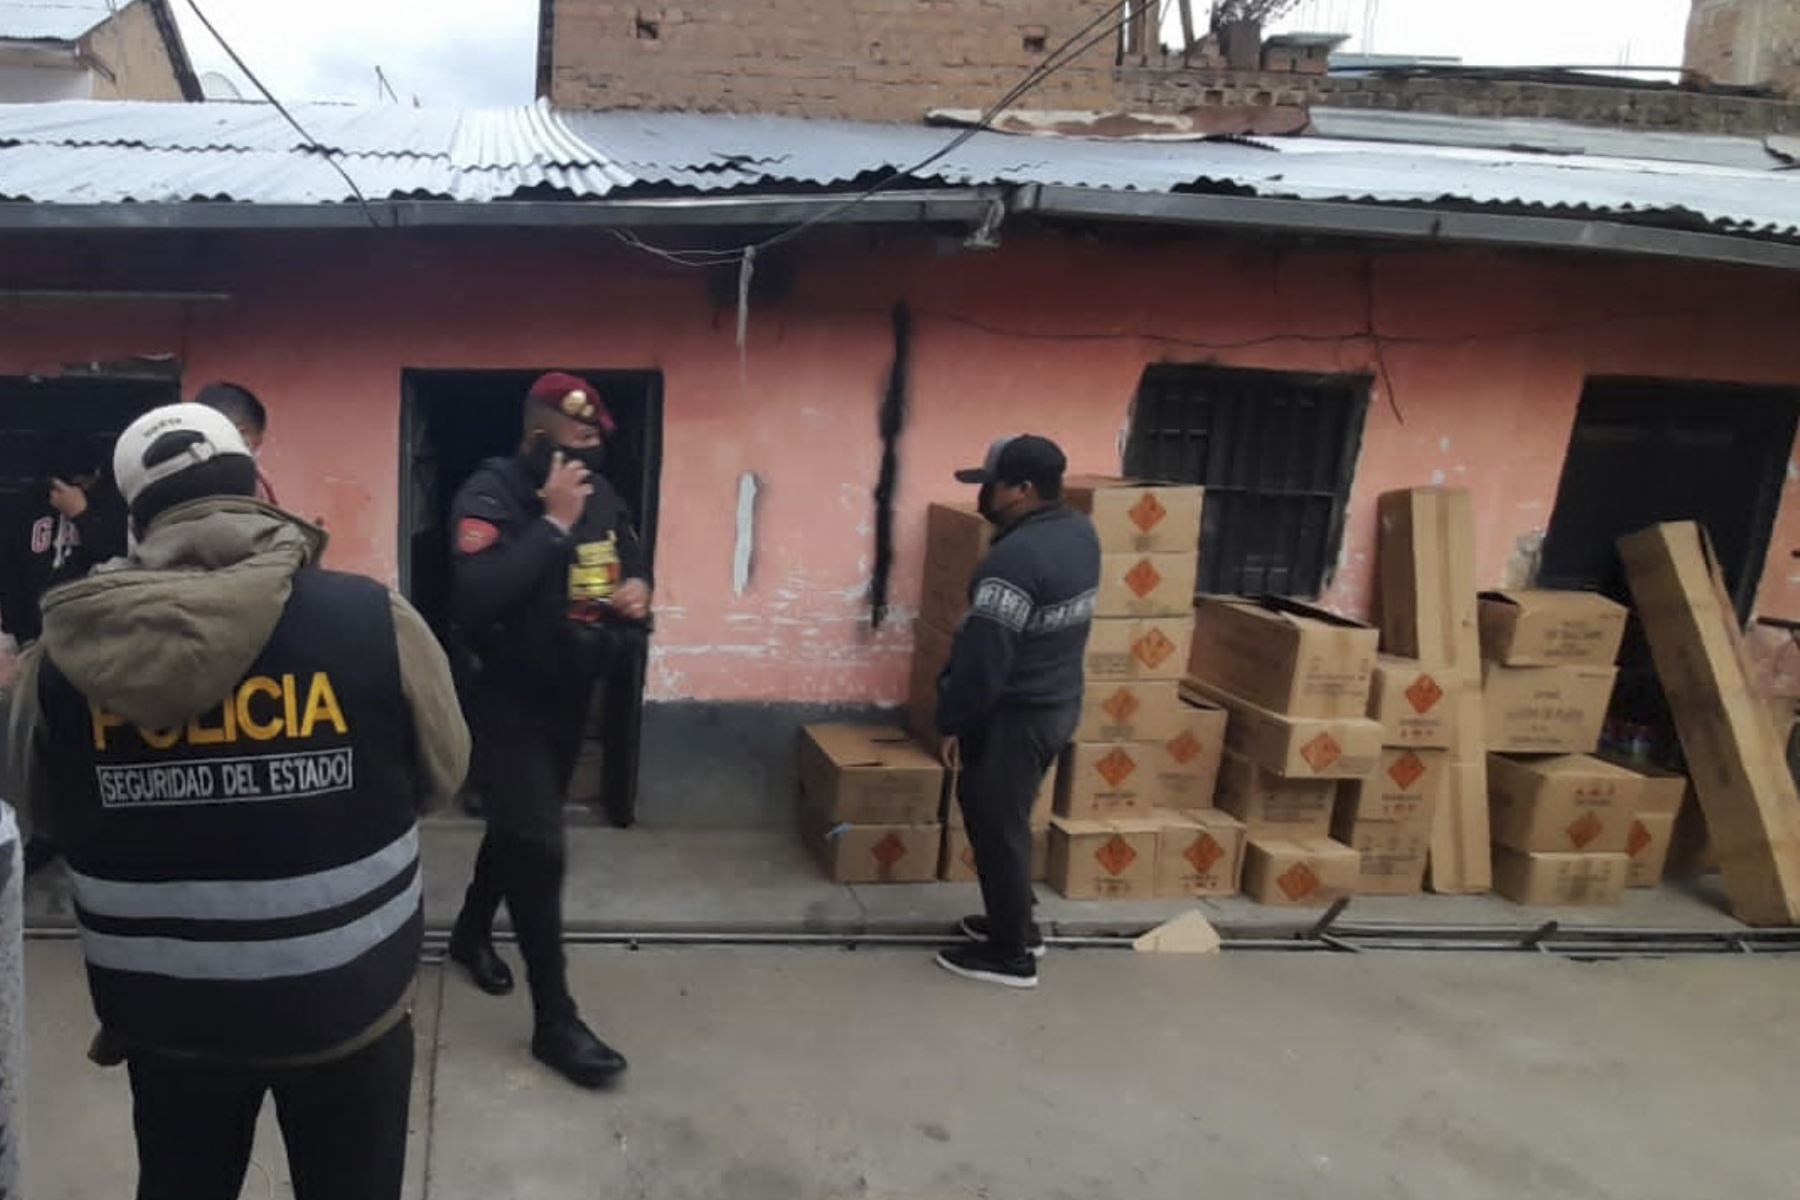 La vivienda, ubicada en el jirón Atahualpa 215, Cercado de Huancayo, había sido convertido en almacén clandestino de artefactos pirotécnicos. Foto: ANDINA/difusión.